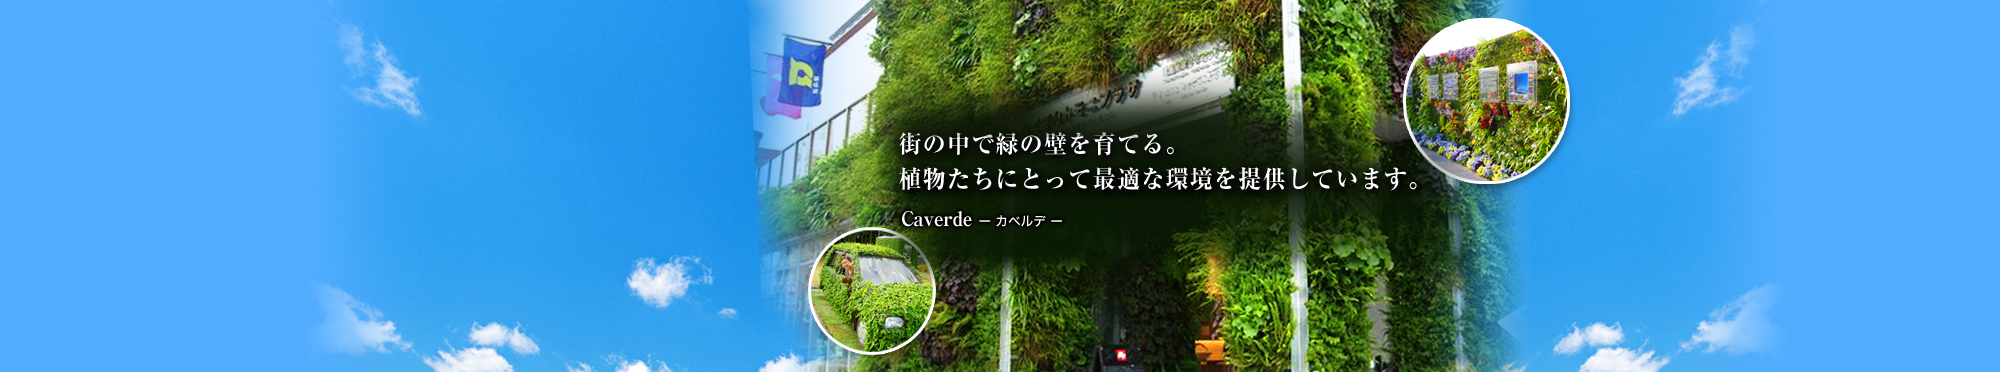 街の中で緑の壁を育てる。植物たちにとって最適な環境を提供しています。 Caverde-カベルデ-